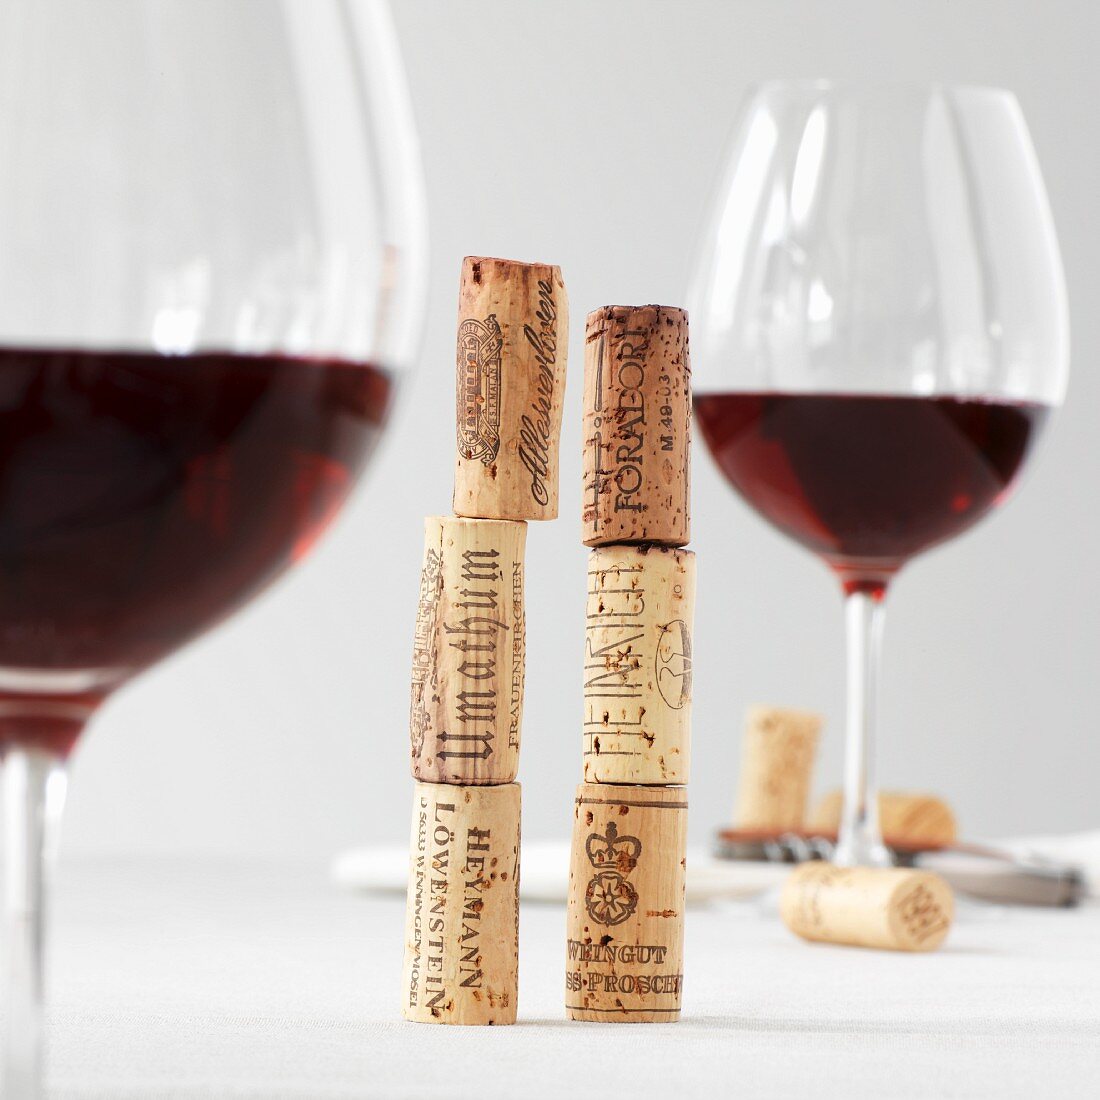 Gestapelte Weinkorken zwischen zwei Gläser Rotwein